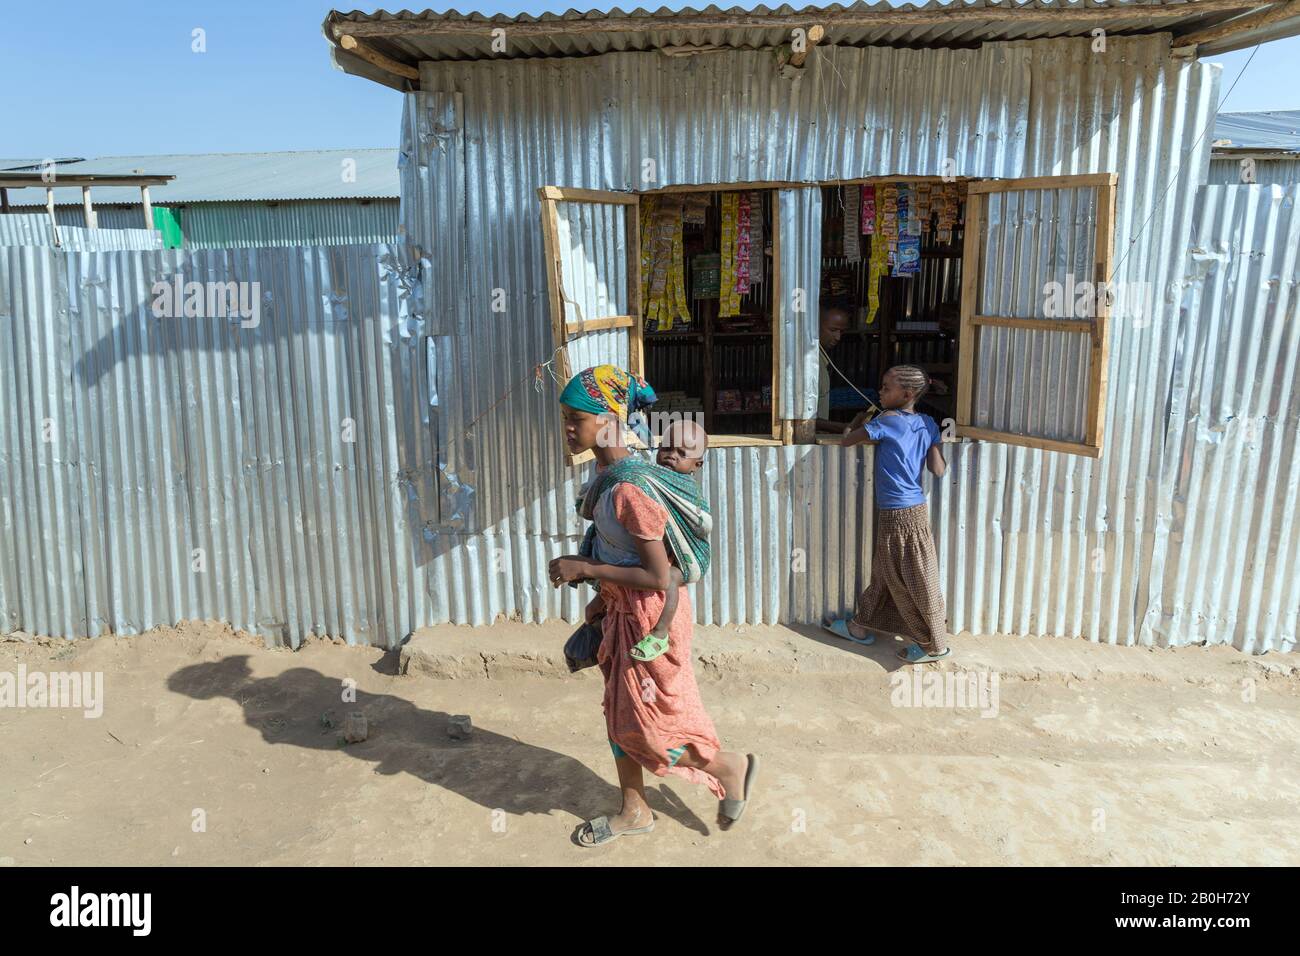 02.11.2019 leben und residieren Adama, Oromiyaa, Äthiopien - 8000 Binnenvertriebene aus der Region Somalia in vier Flüchtlingslagern am Stadtrand. Ein Mädchen a Stockfoto